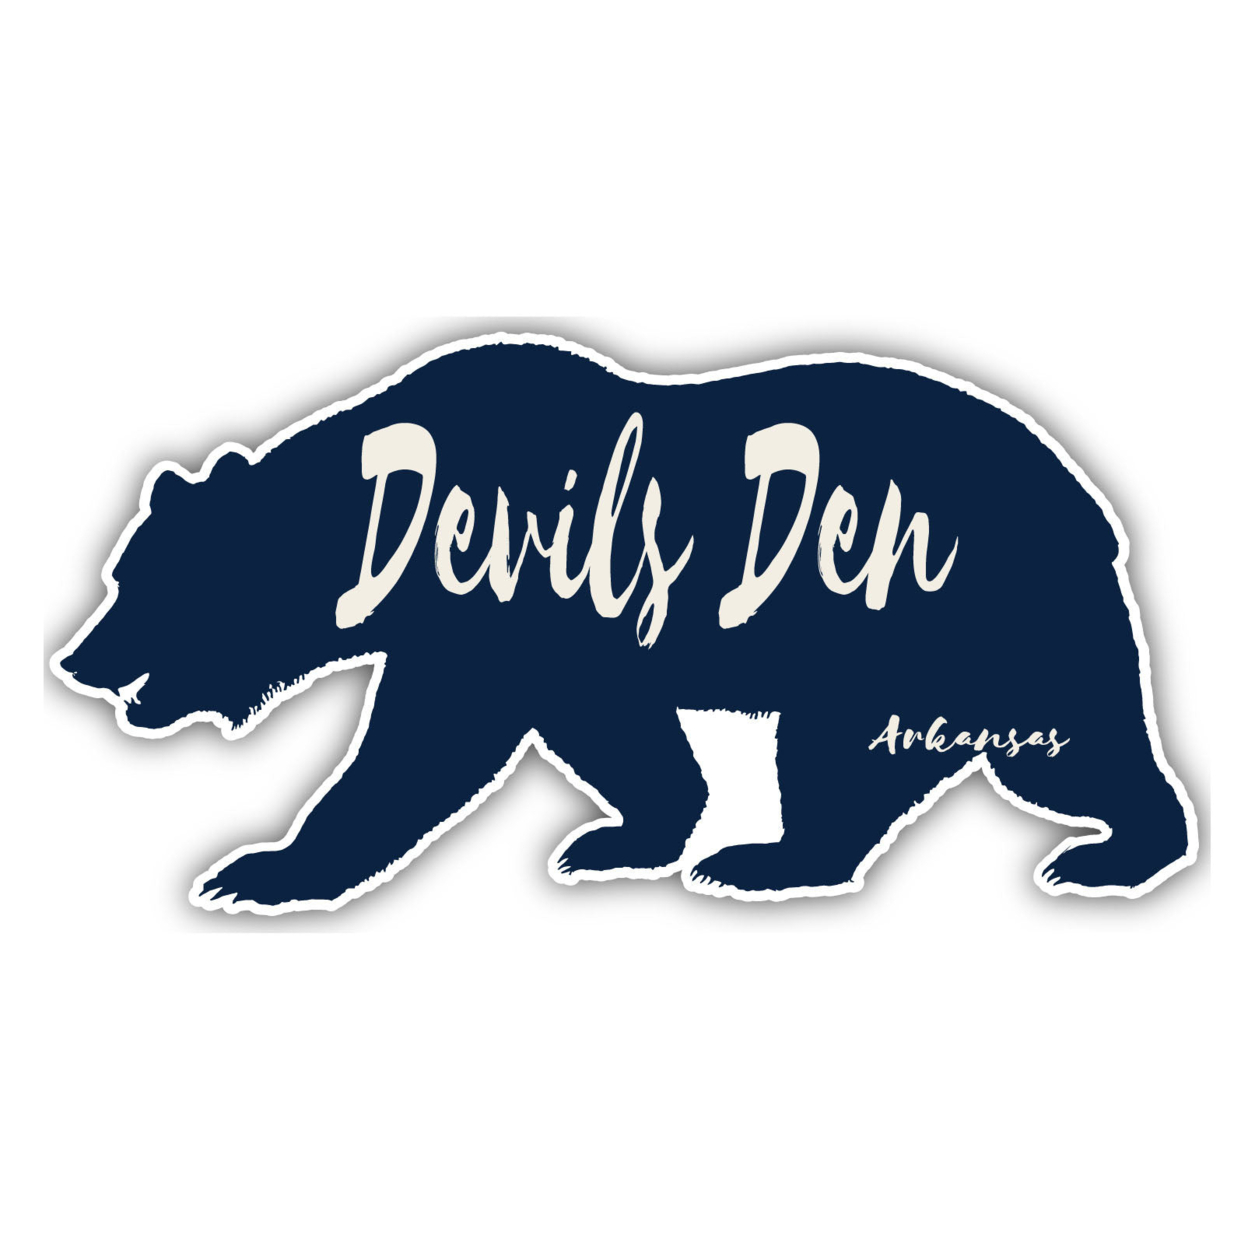 Devils Den Arkansas Souvenir Decorative Stickers (Choose Theme And Size) - Single Unit, 12-Inch, Bear